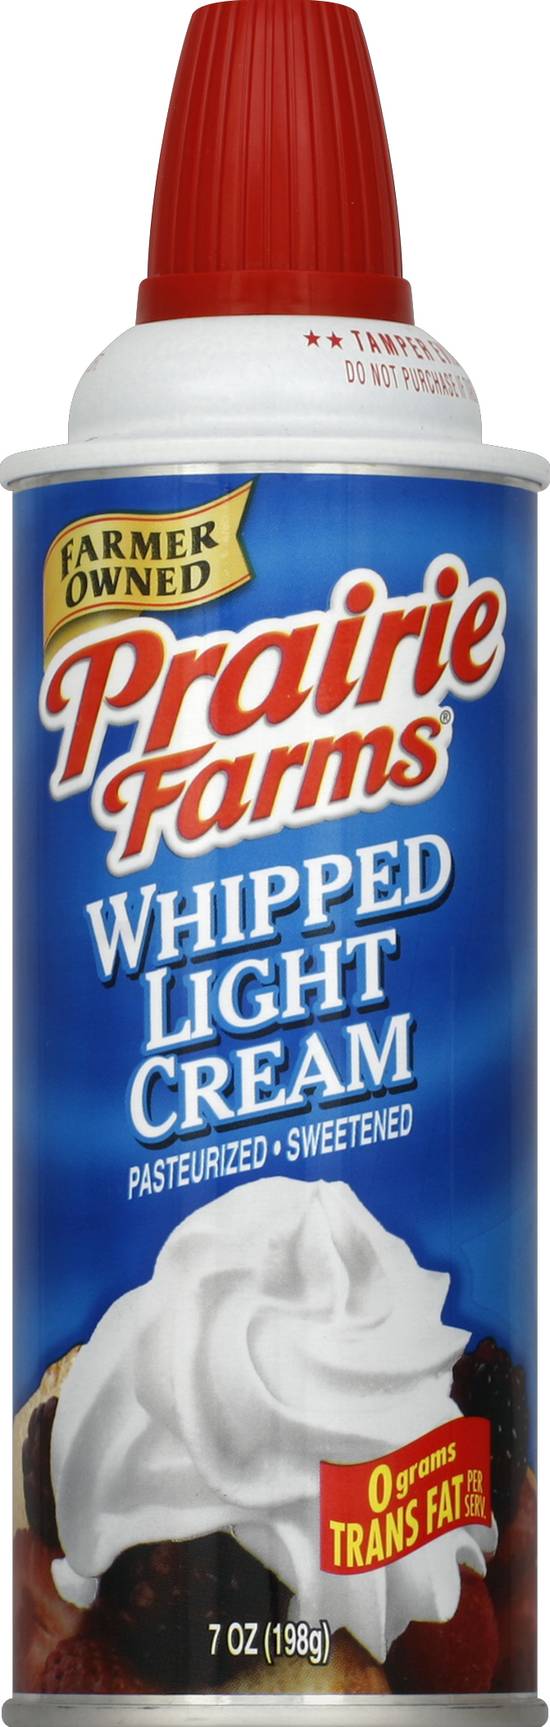 Prairie Farms Whipped Light Cream